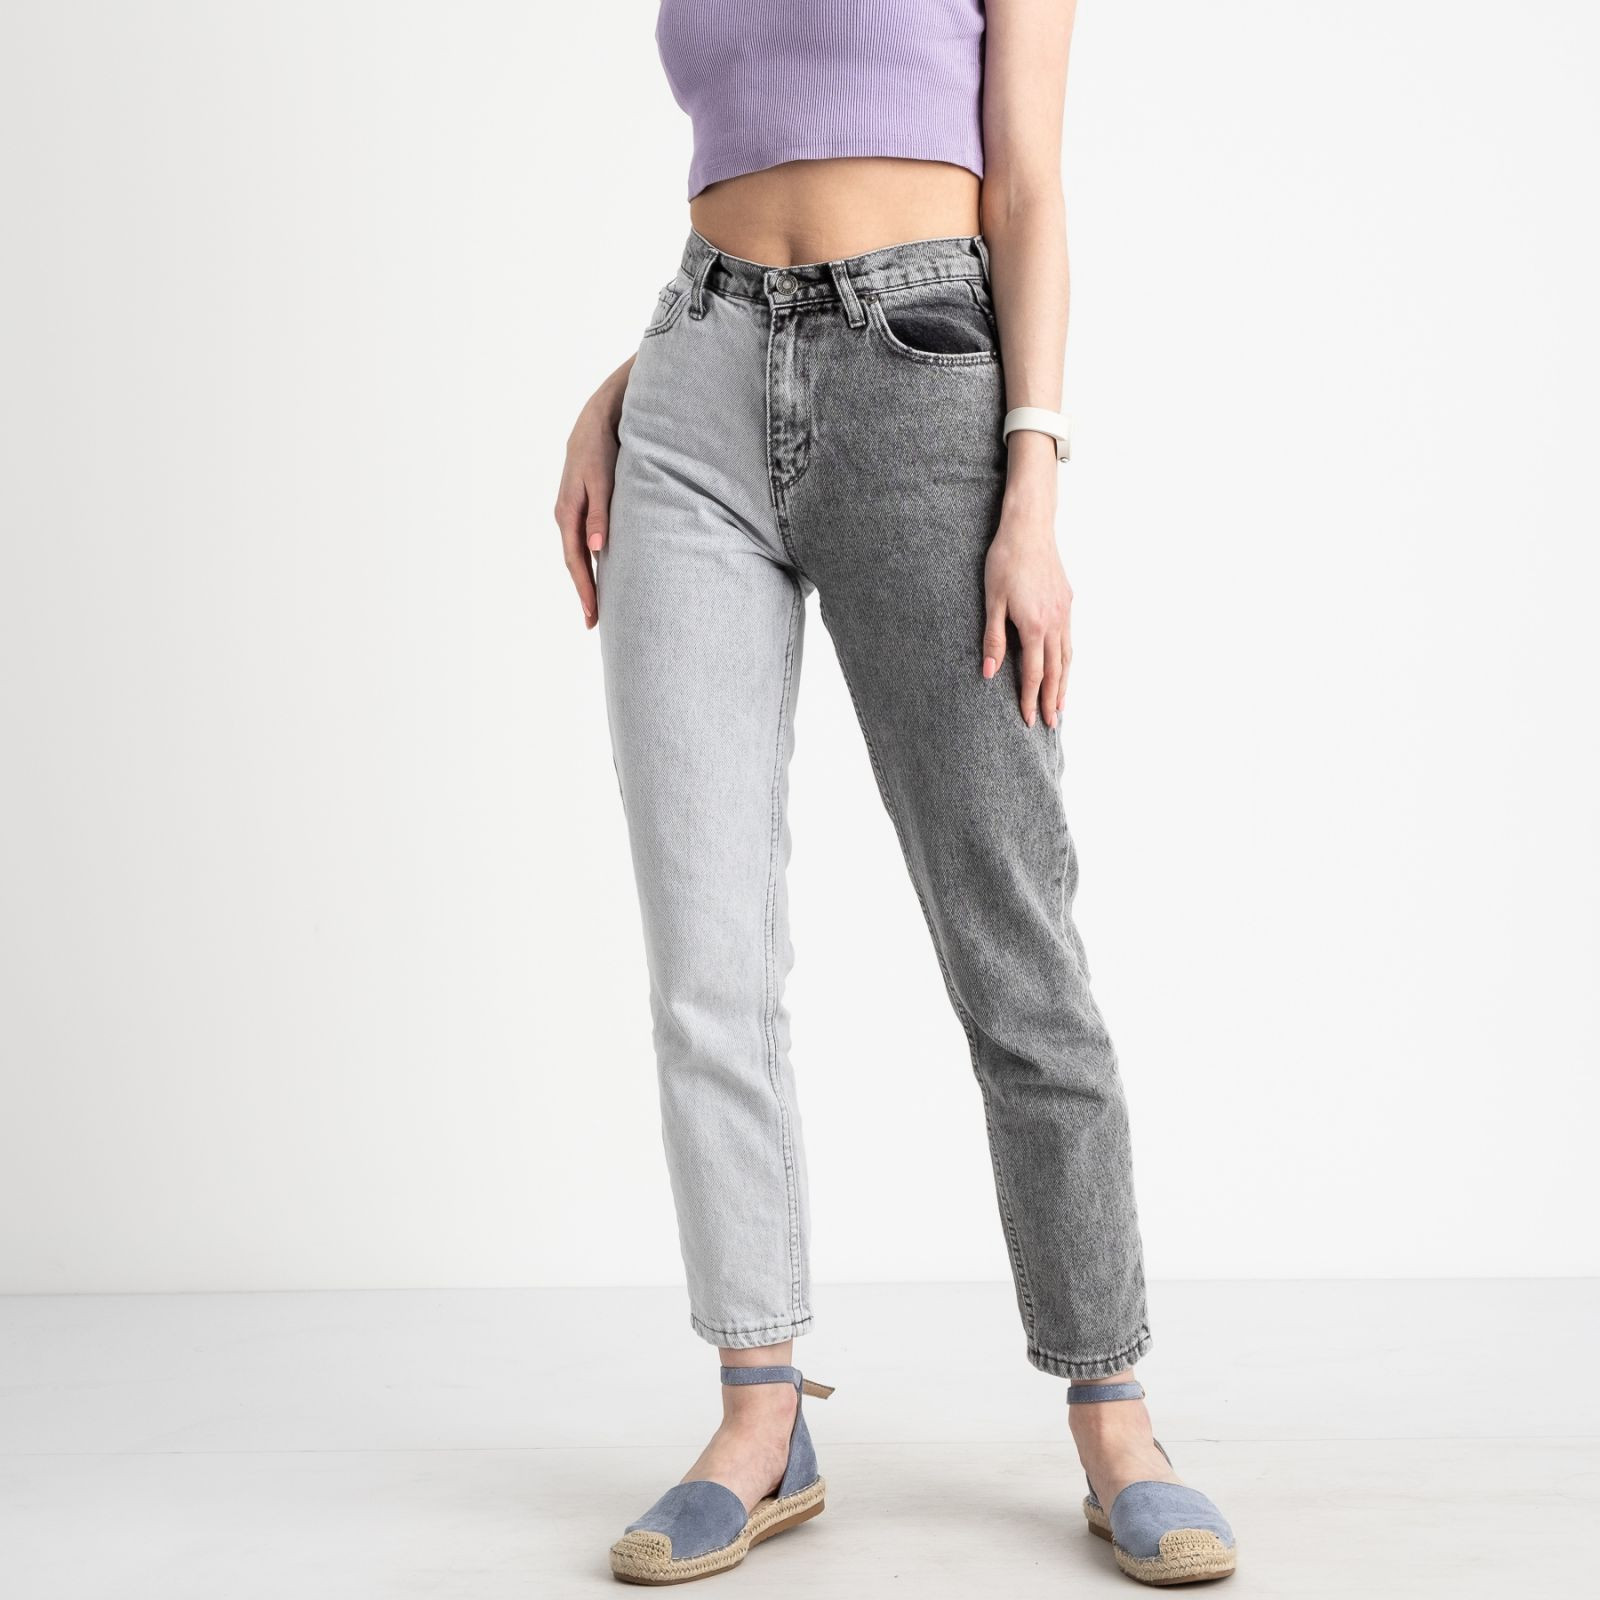 4028 Xray джинсы женские двухцветные котоновые (6 ед. размеры:26.27.28.29.30.31)